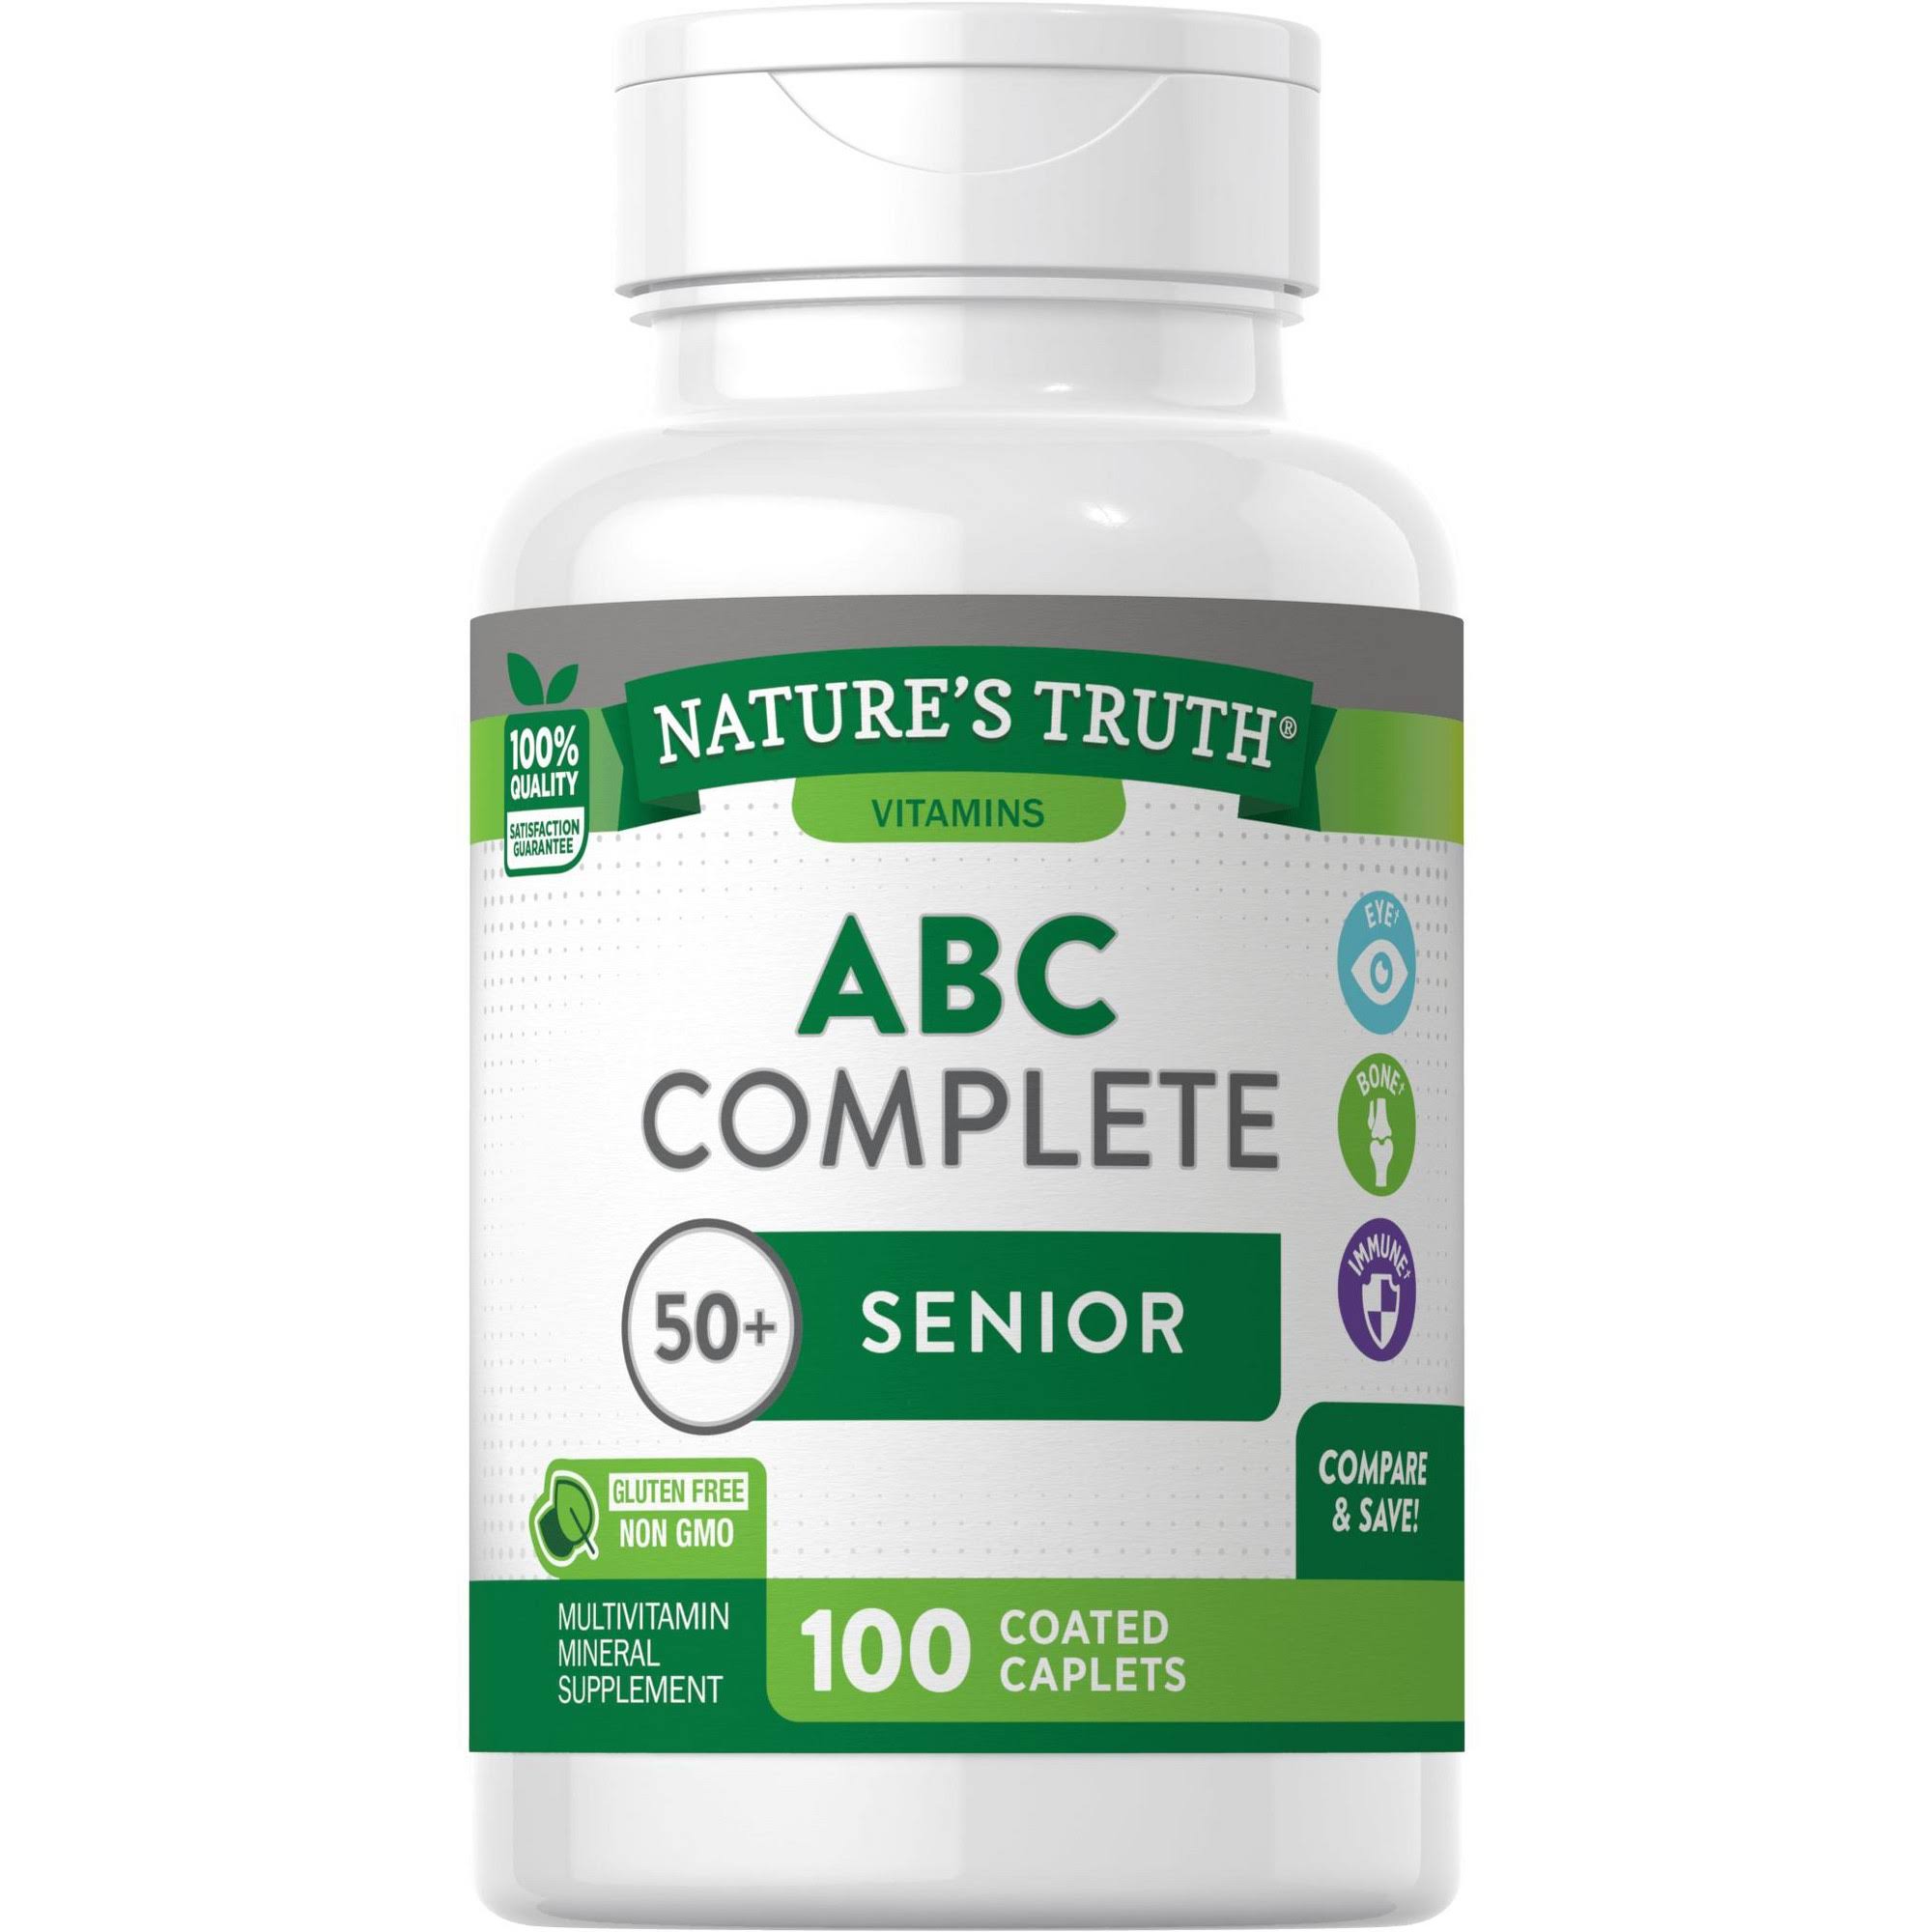 Natures Truth Abc Complete Senior 50+ Multivitamin - 100 Caplets